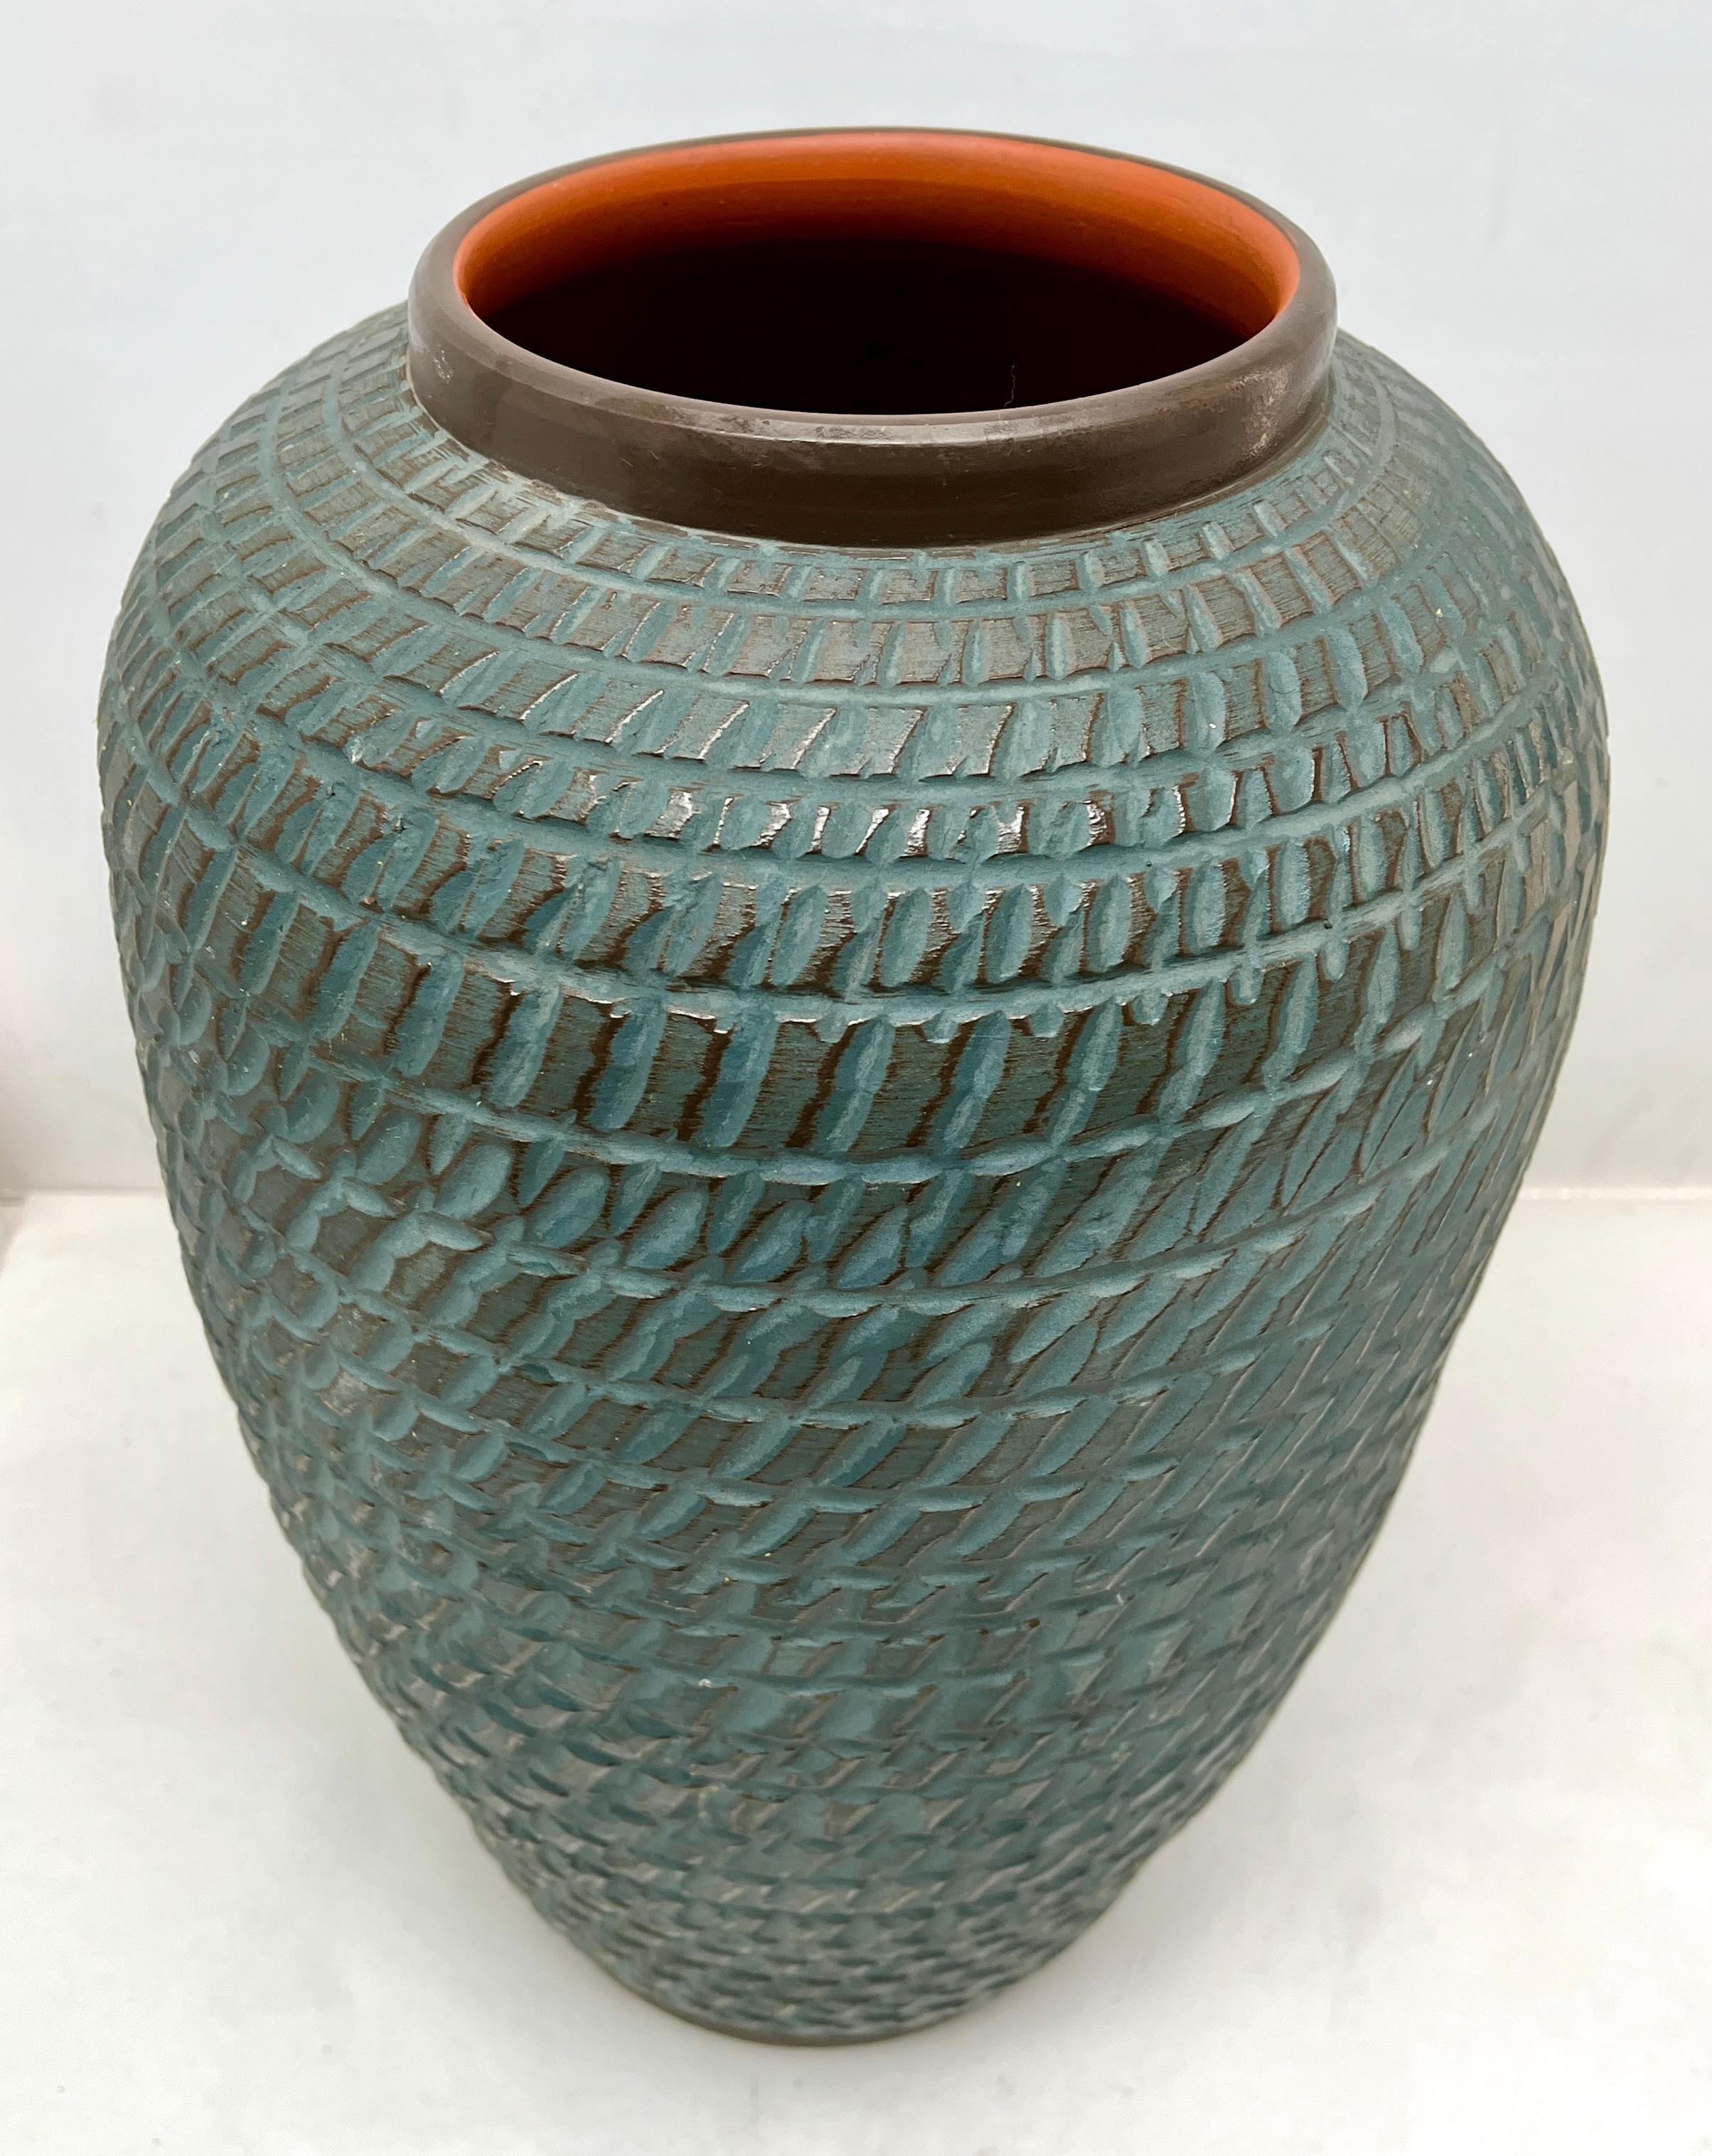 Ce vase vintage original a été produit dans les années 1970 en Allemagne. Il est fabriqué en céramique.
Le fond est marqué du numéro de série du vase 40 Handarbeit.
Un design direct et minimaliste de l'ère du design des années 1960. 
Super rare dans